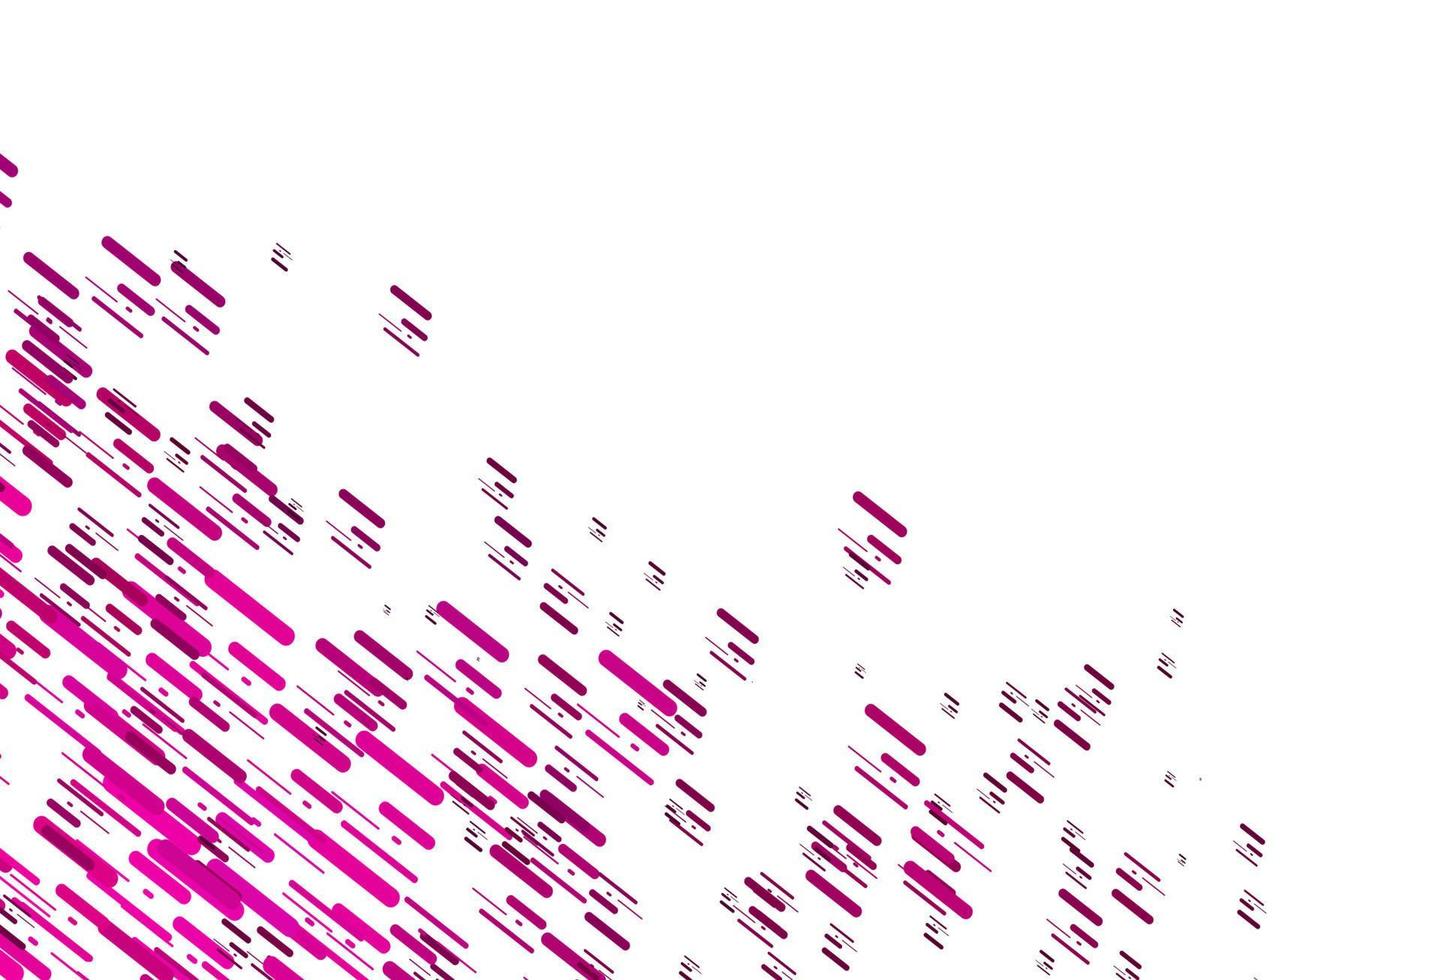 sfondo vettoriale rosa chiaro con linee rette.